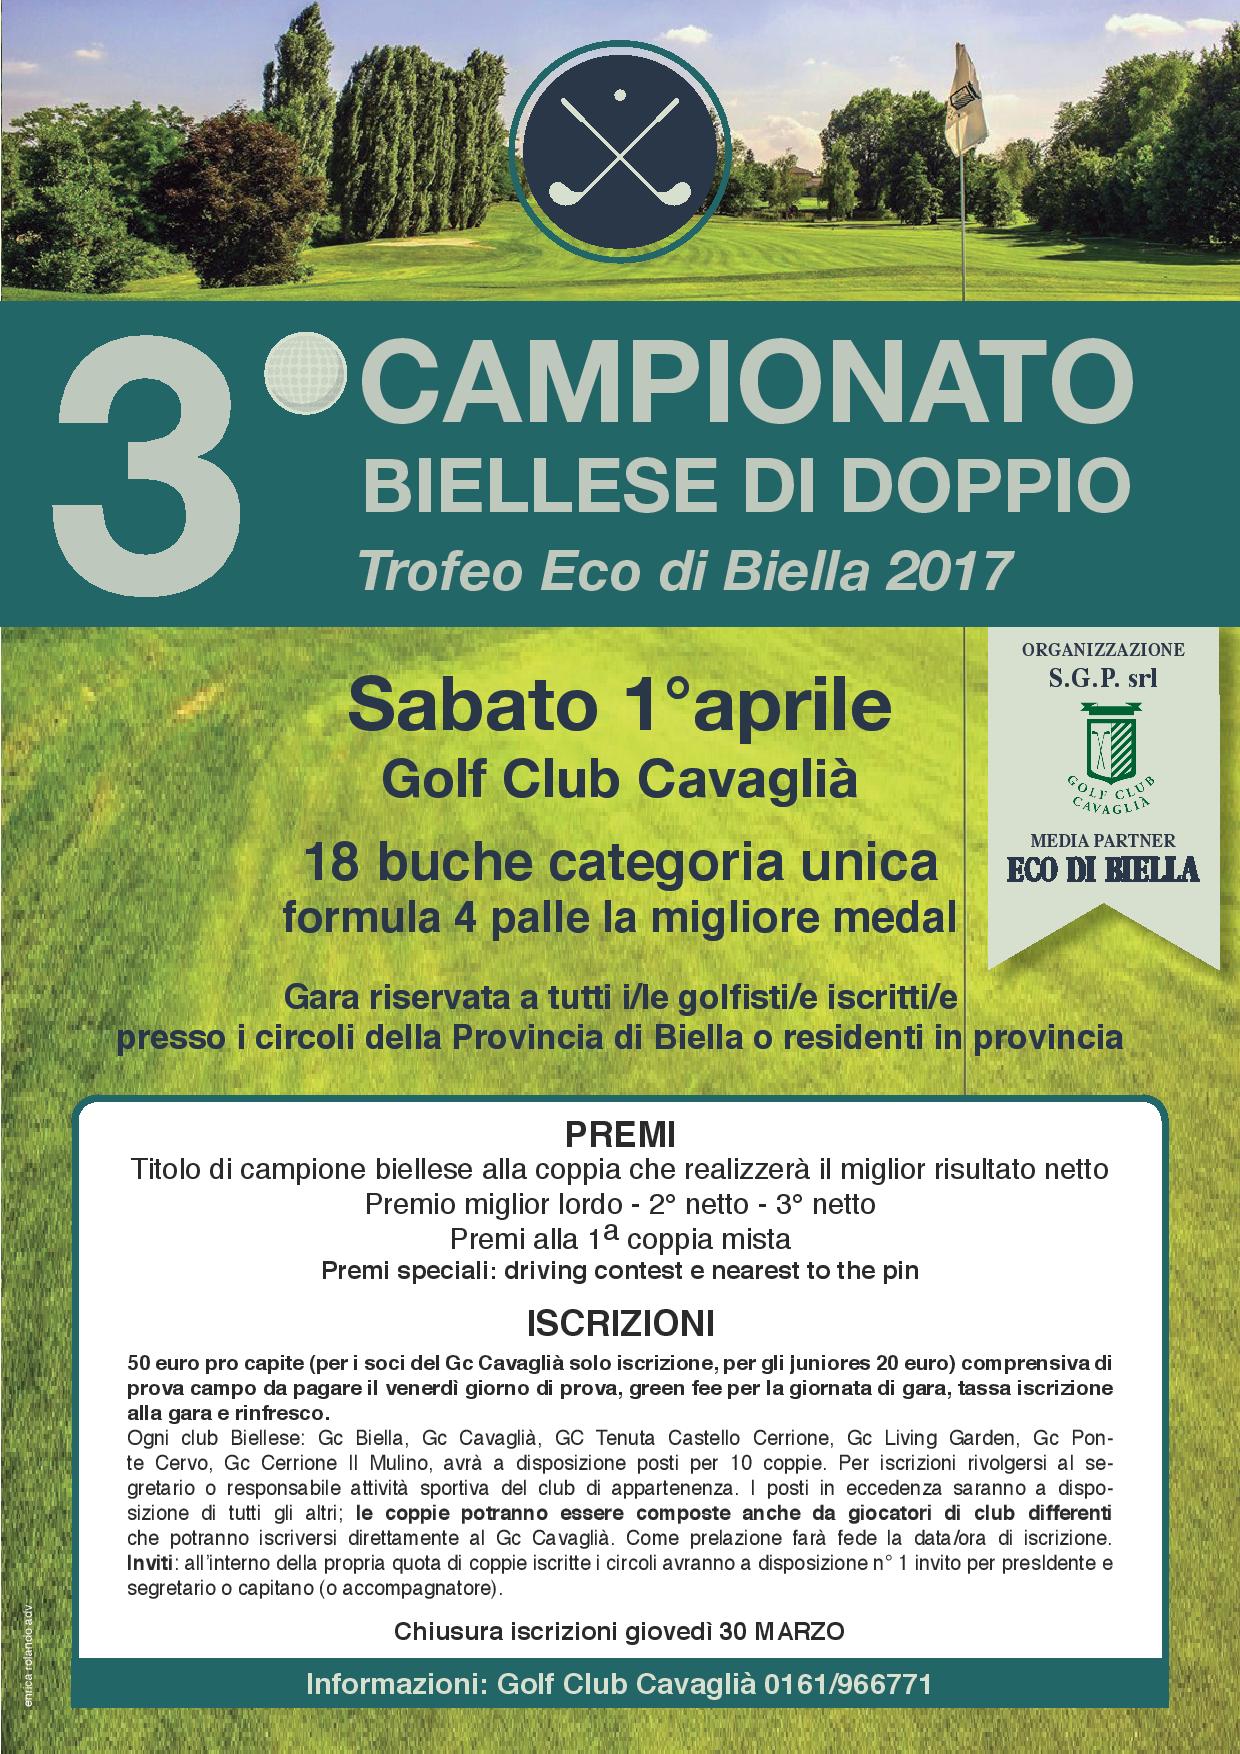 CAMPIONATO BIELLESE DI DOPPIO - Sabato 1 Aprile 2017